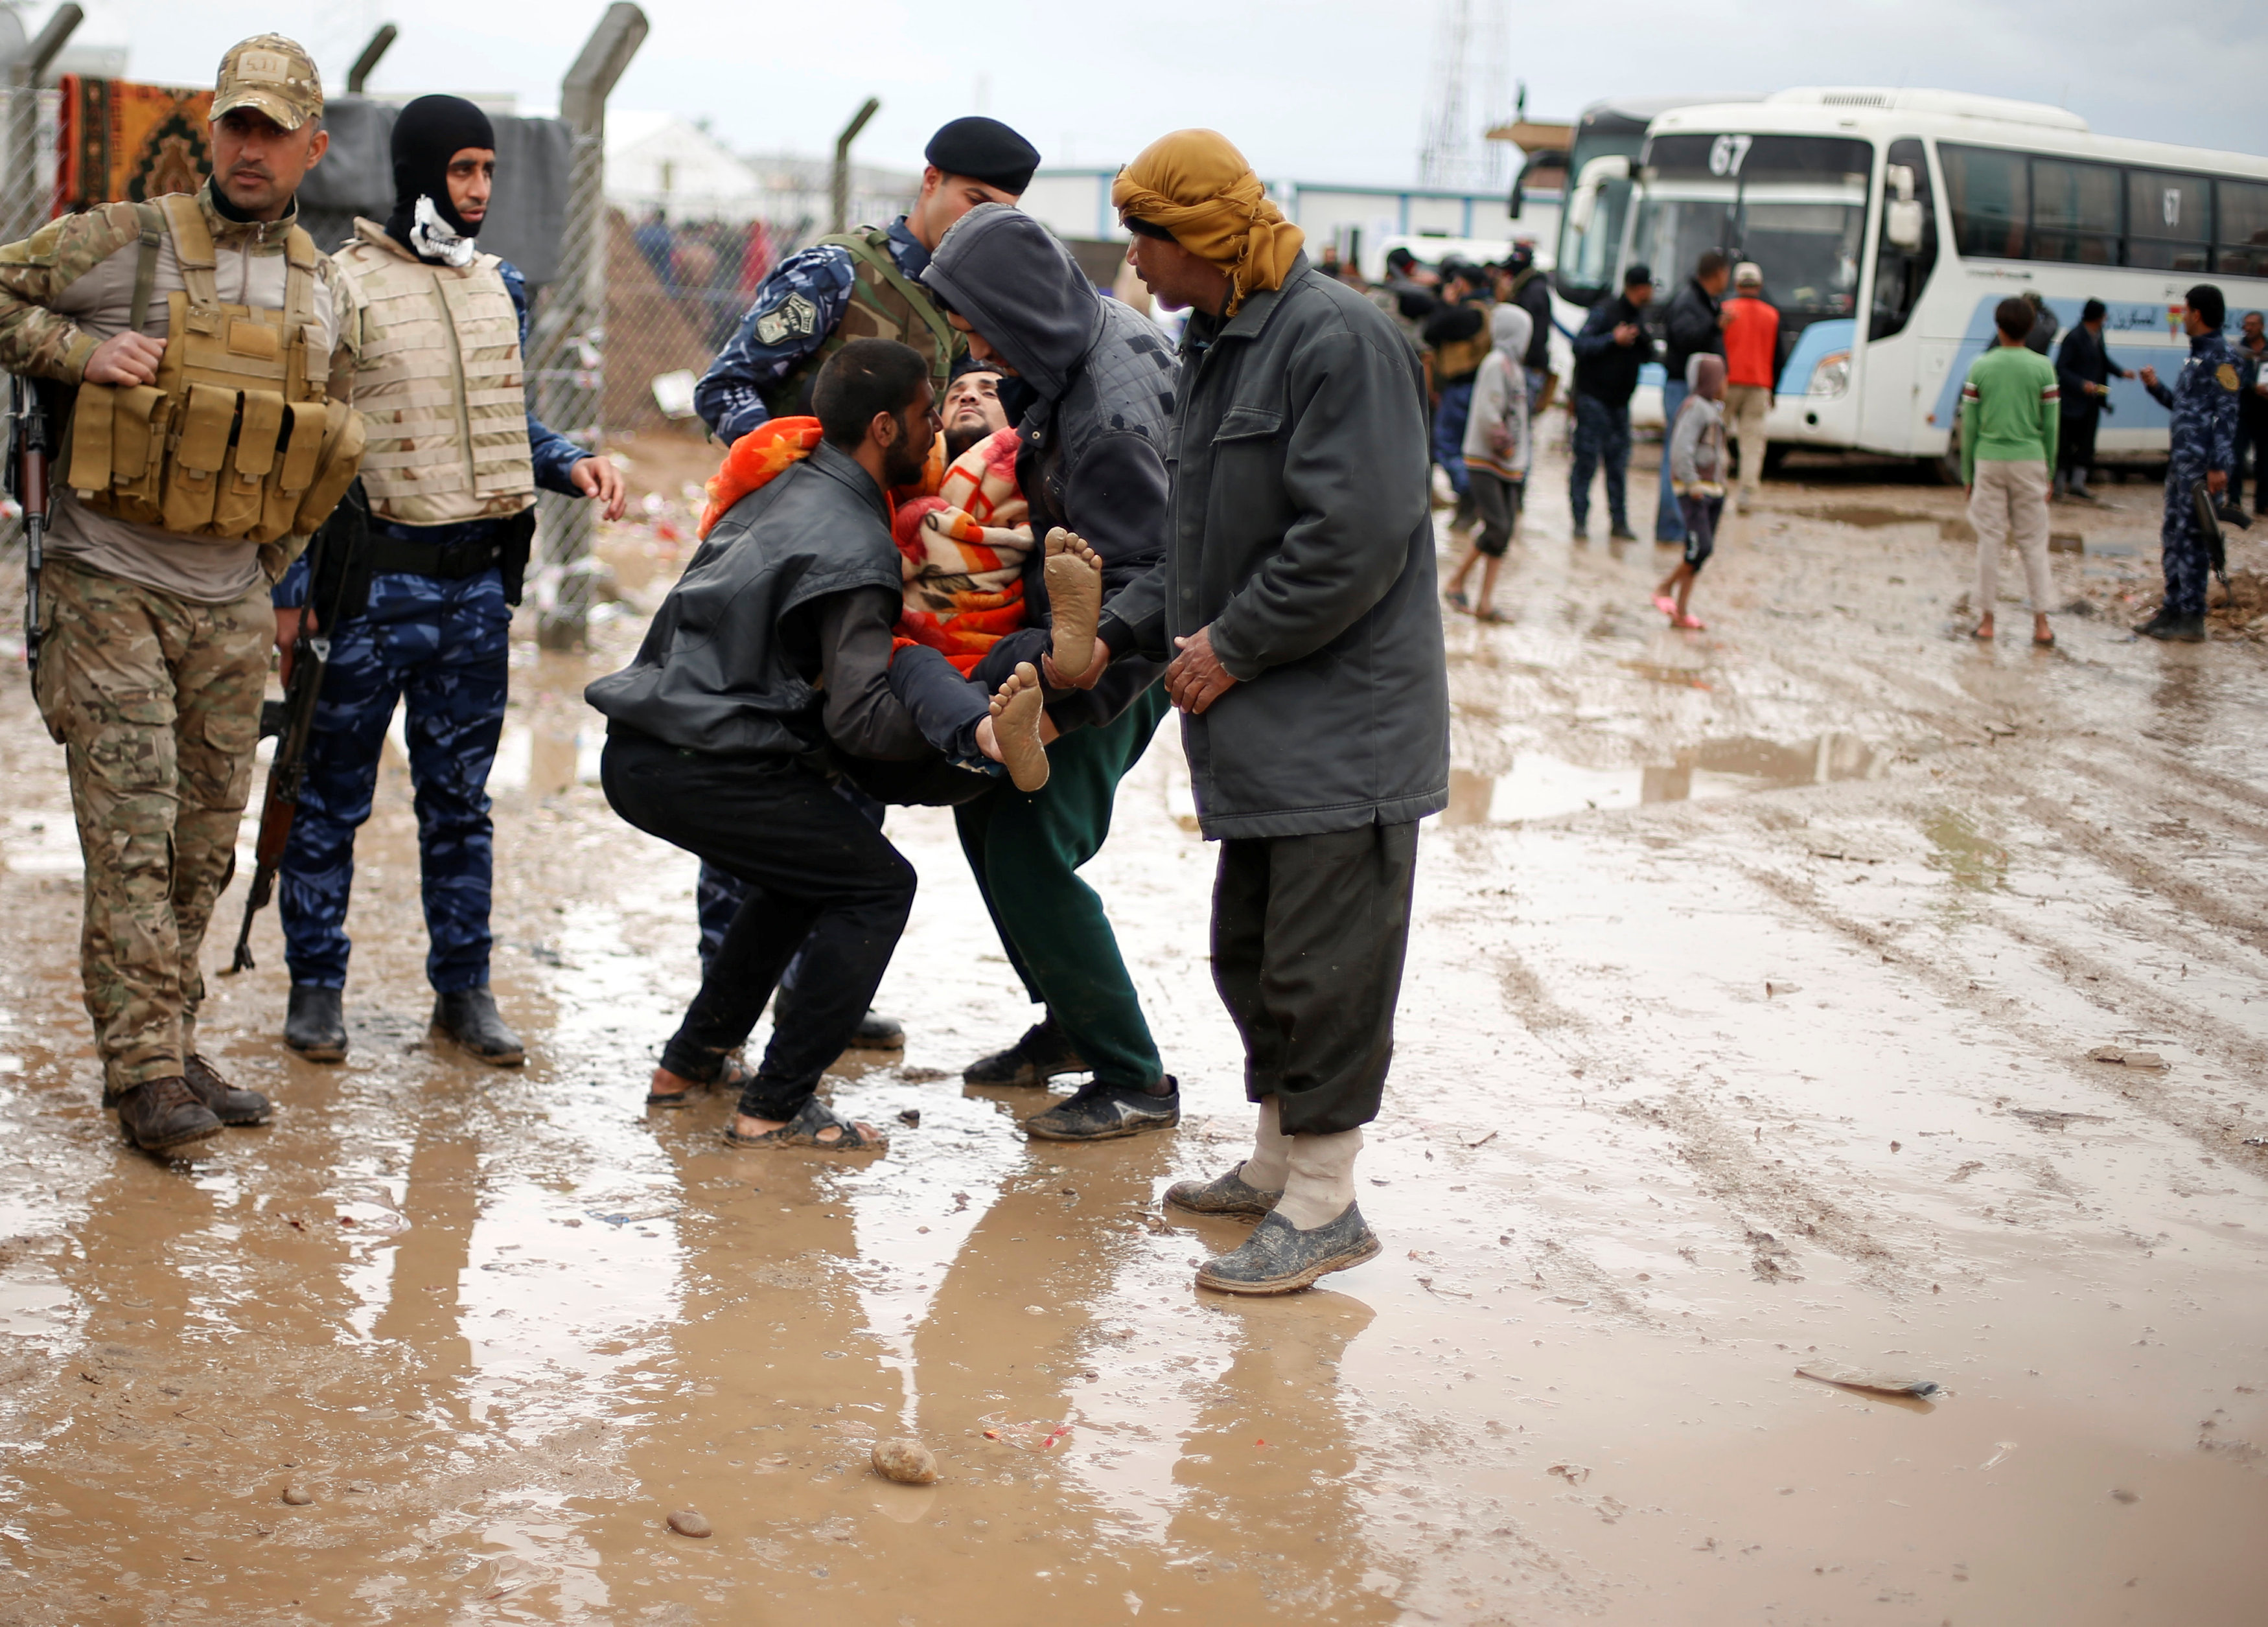 نازحون يحملون عراقيا خلال توجههم للمخيمات وسط المطر